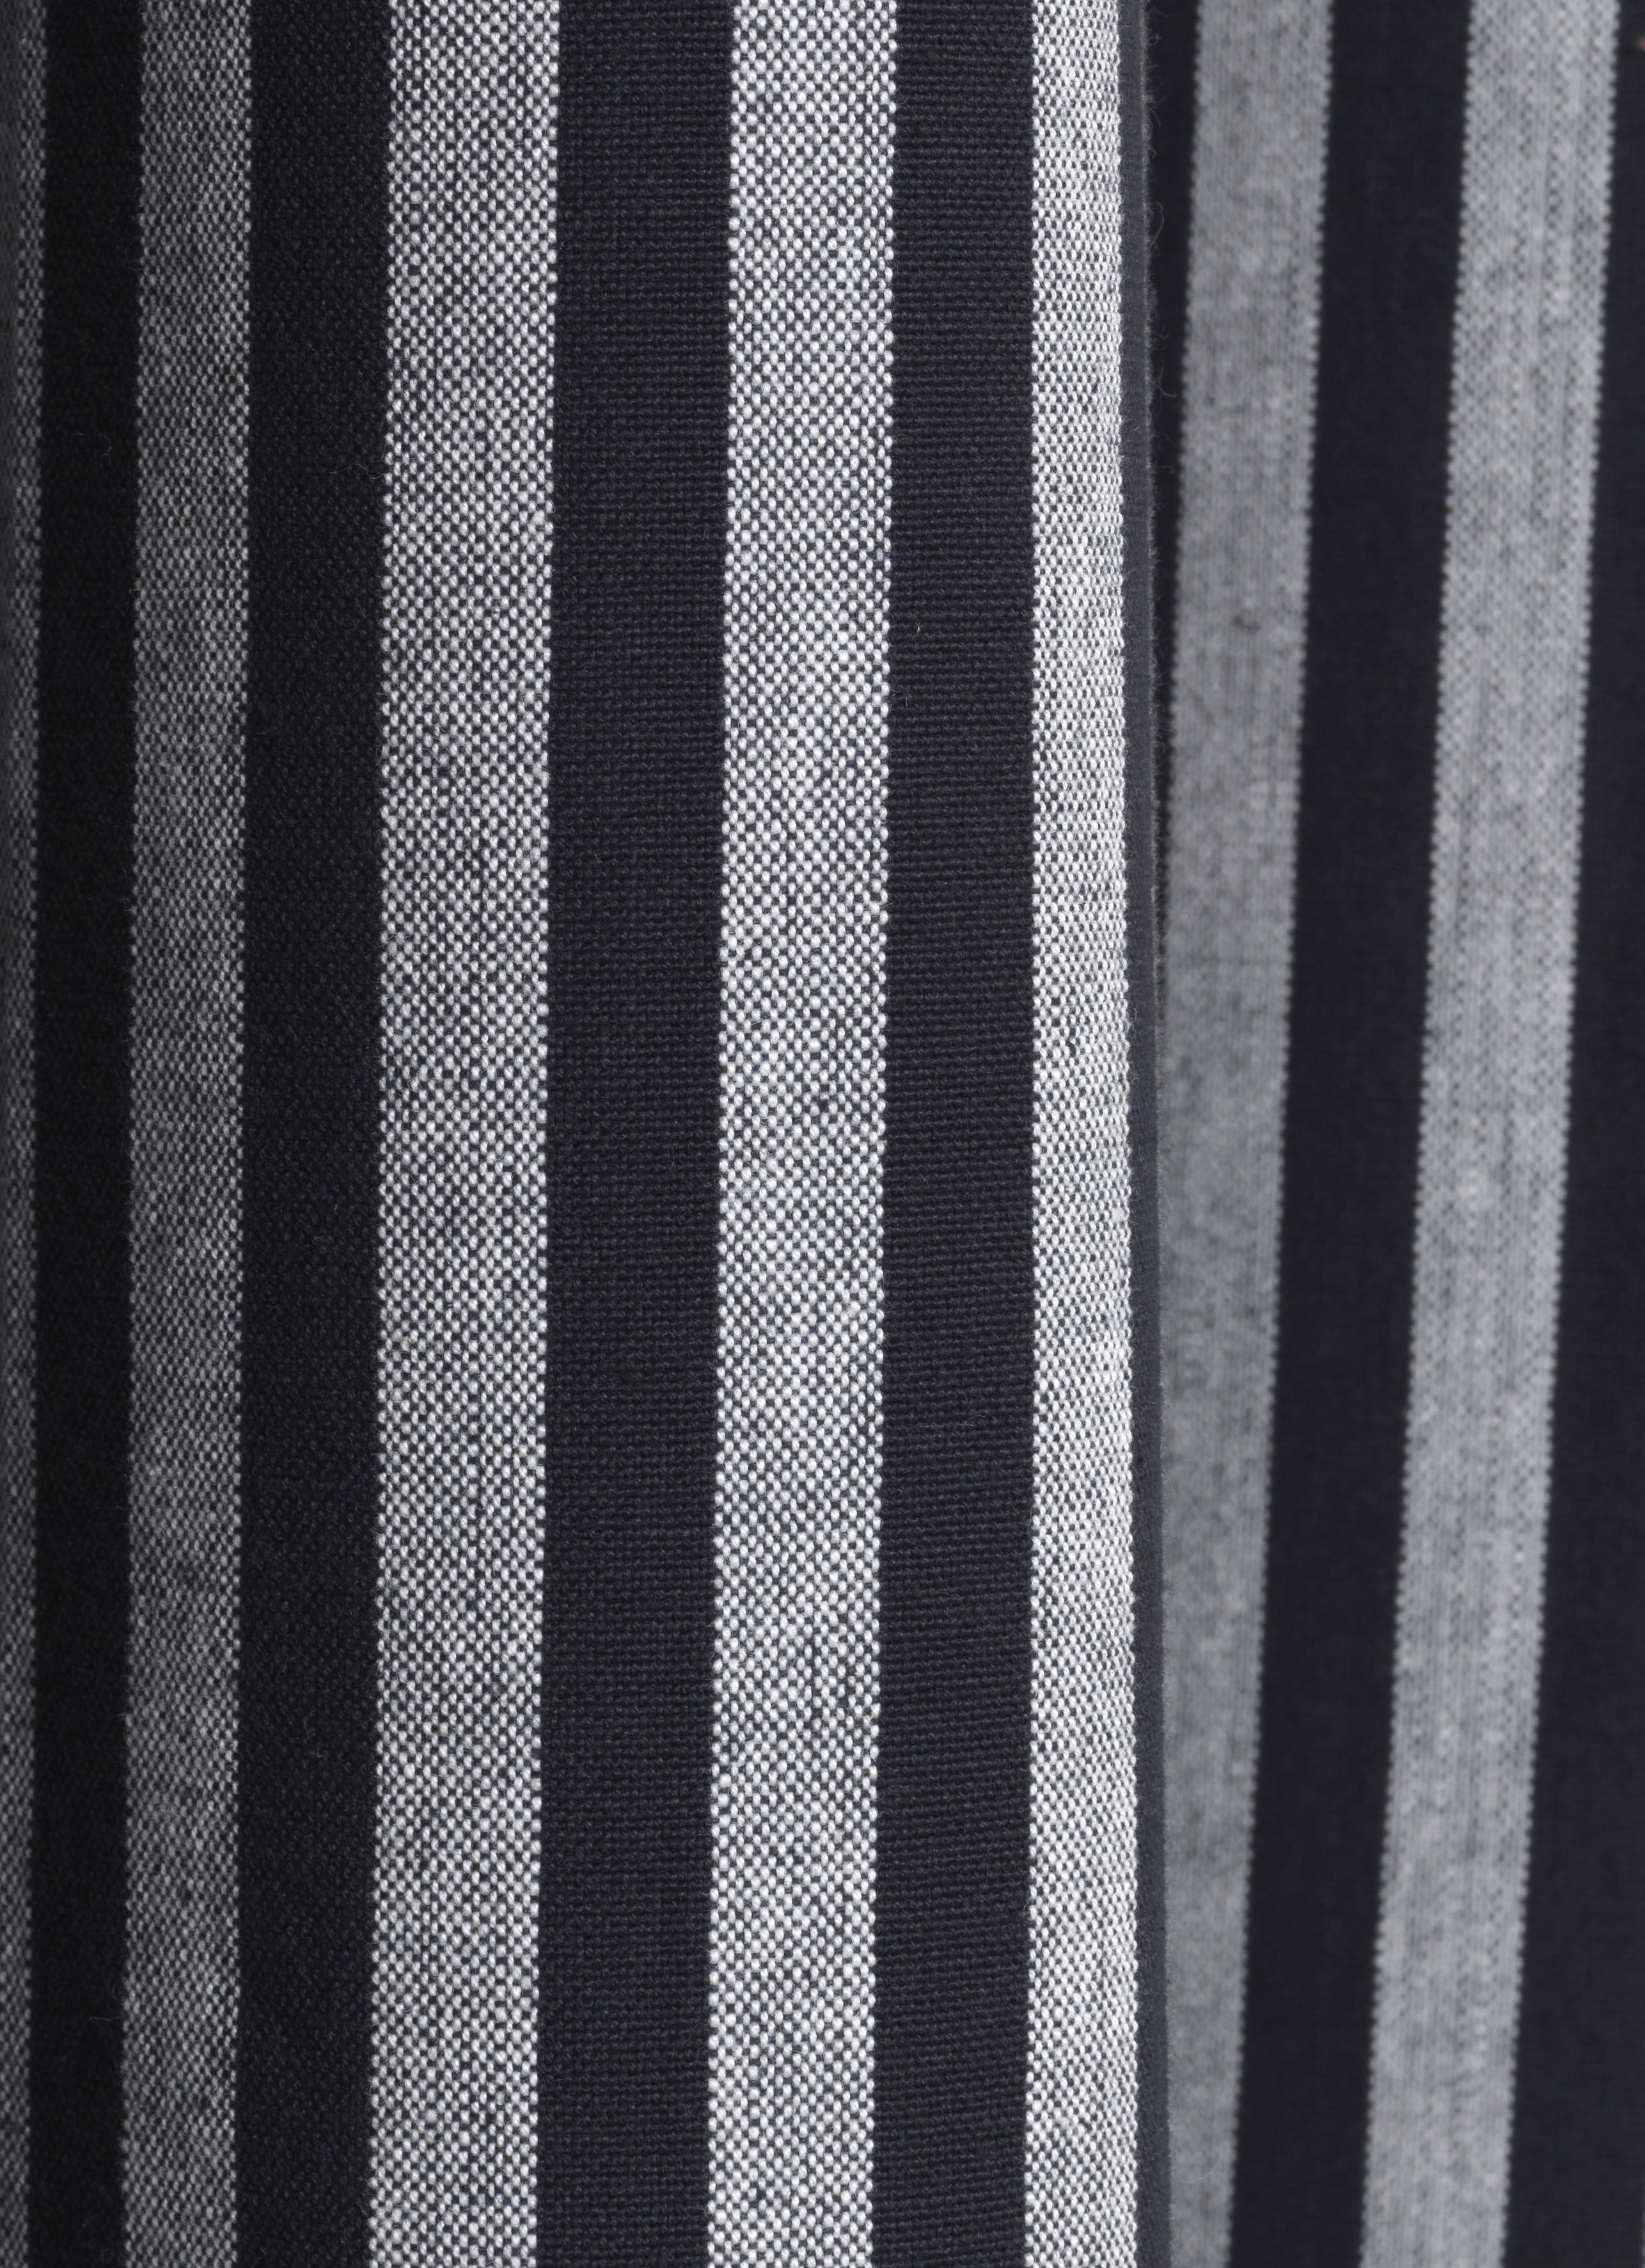 Rideau de douche Chambray Striped Ferm Living - gris noir